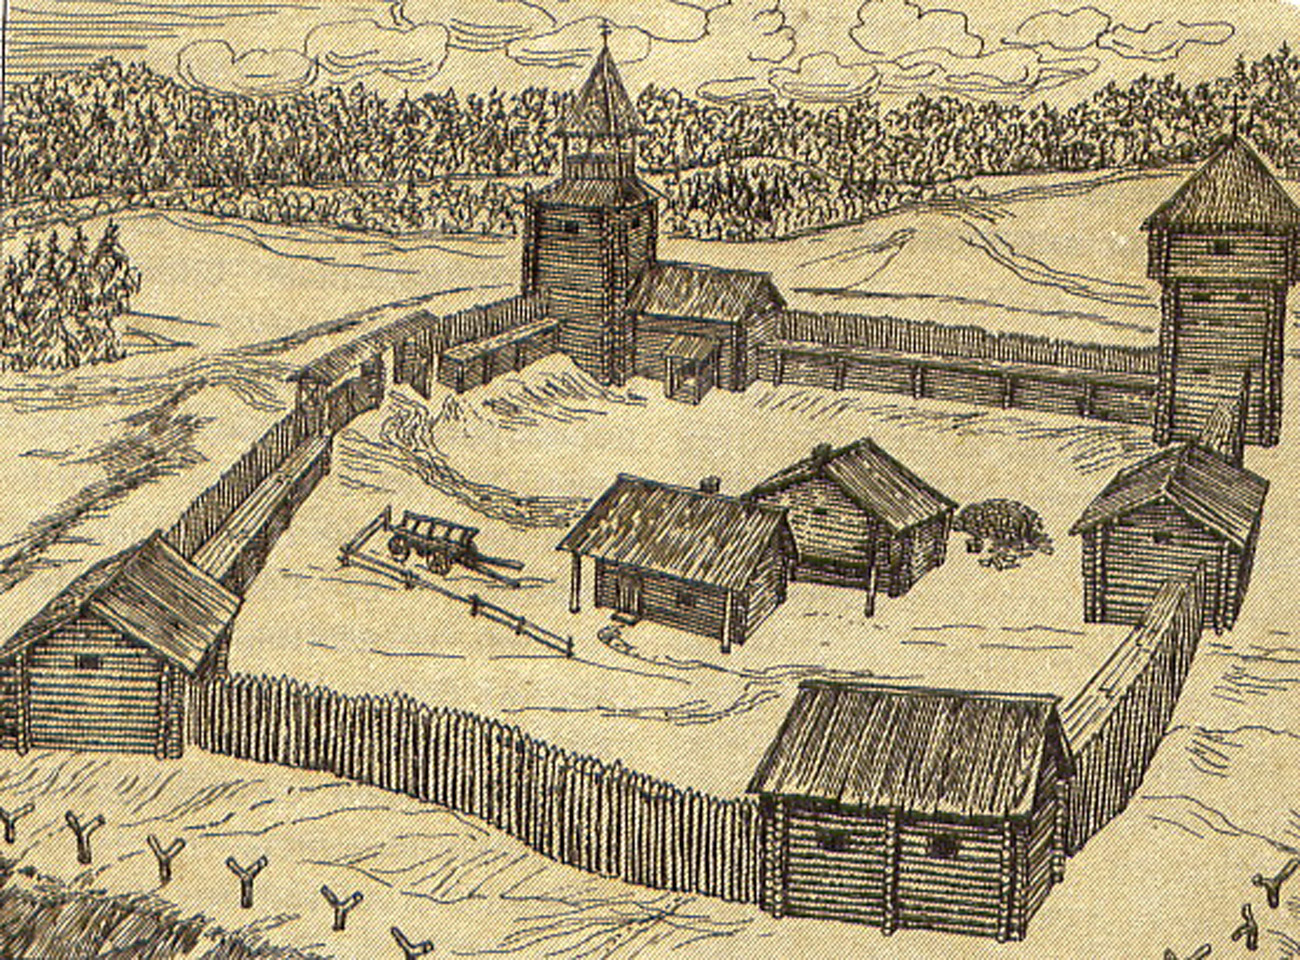 つぎつぎに要塞・砦がシベリアで建設され、その後、それらの入植地は大都市になっていく